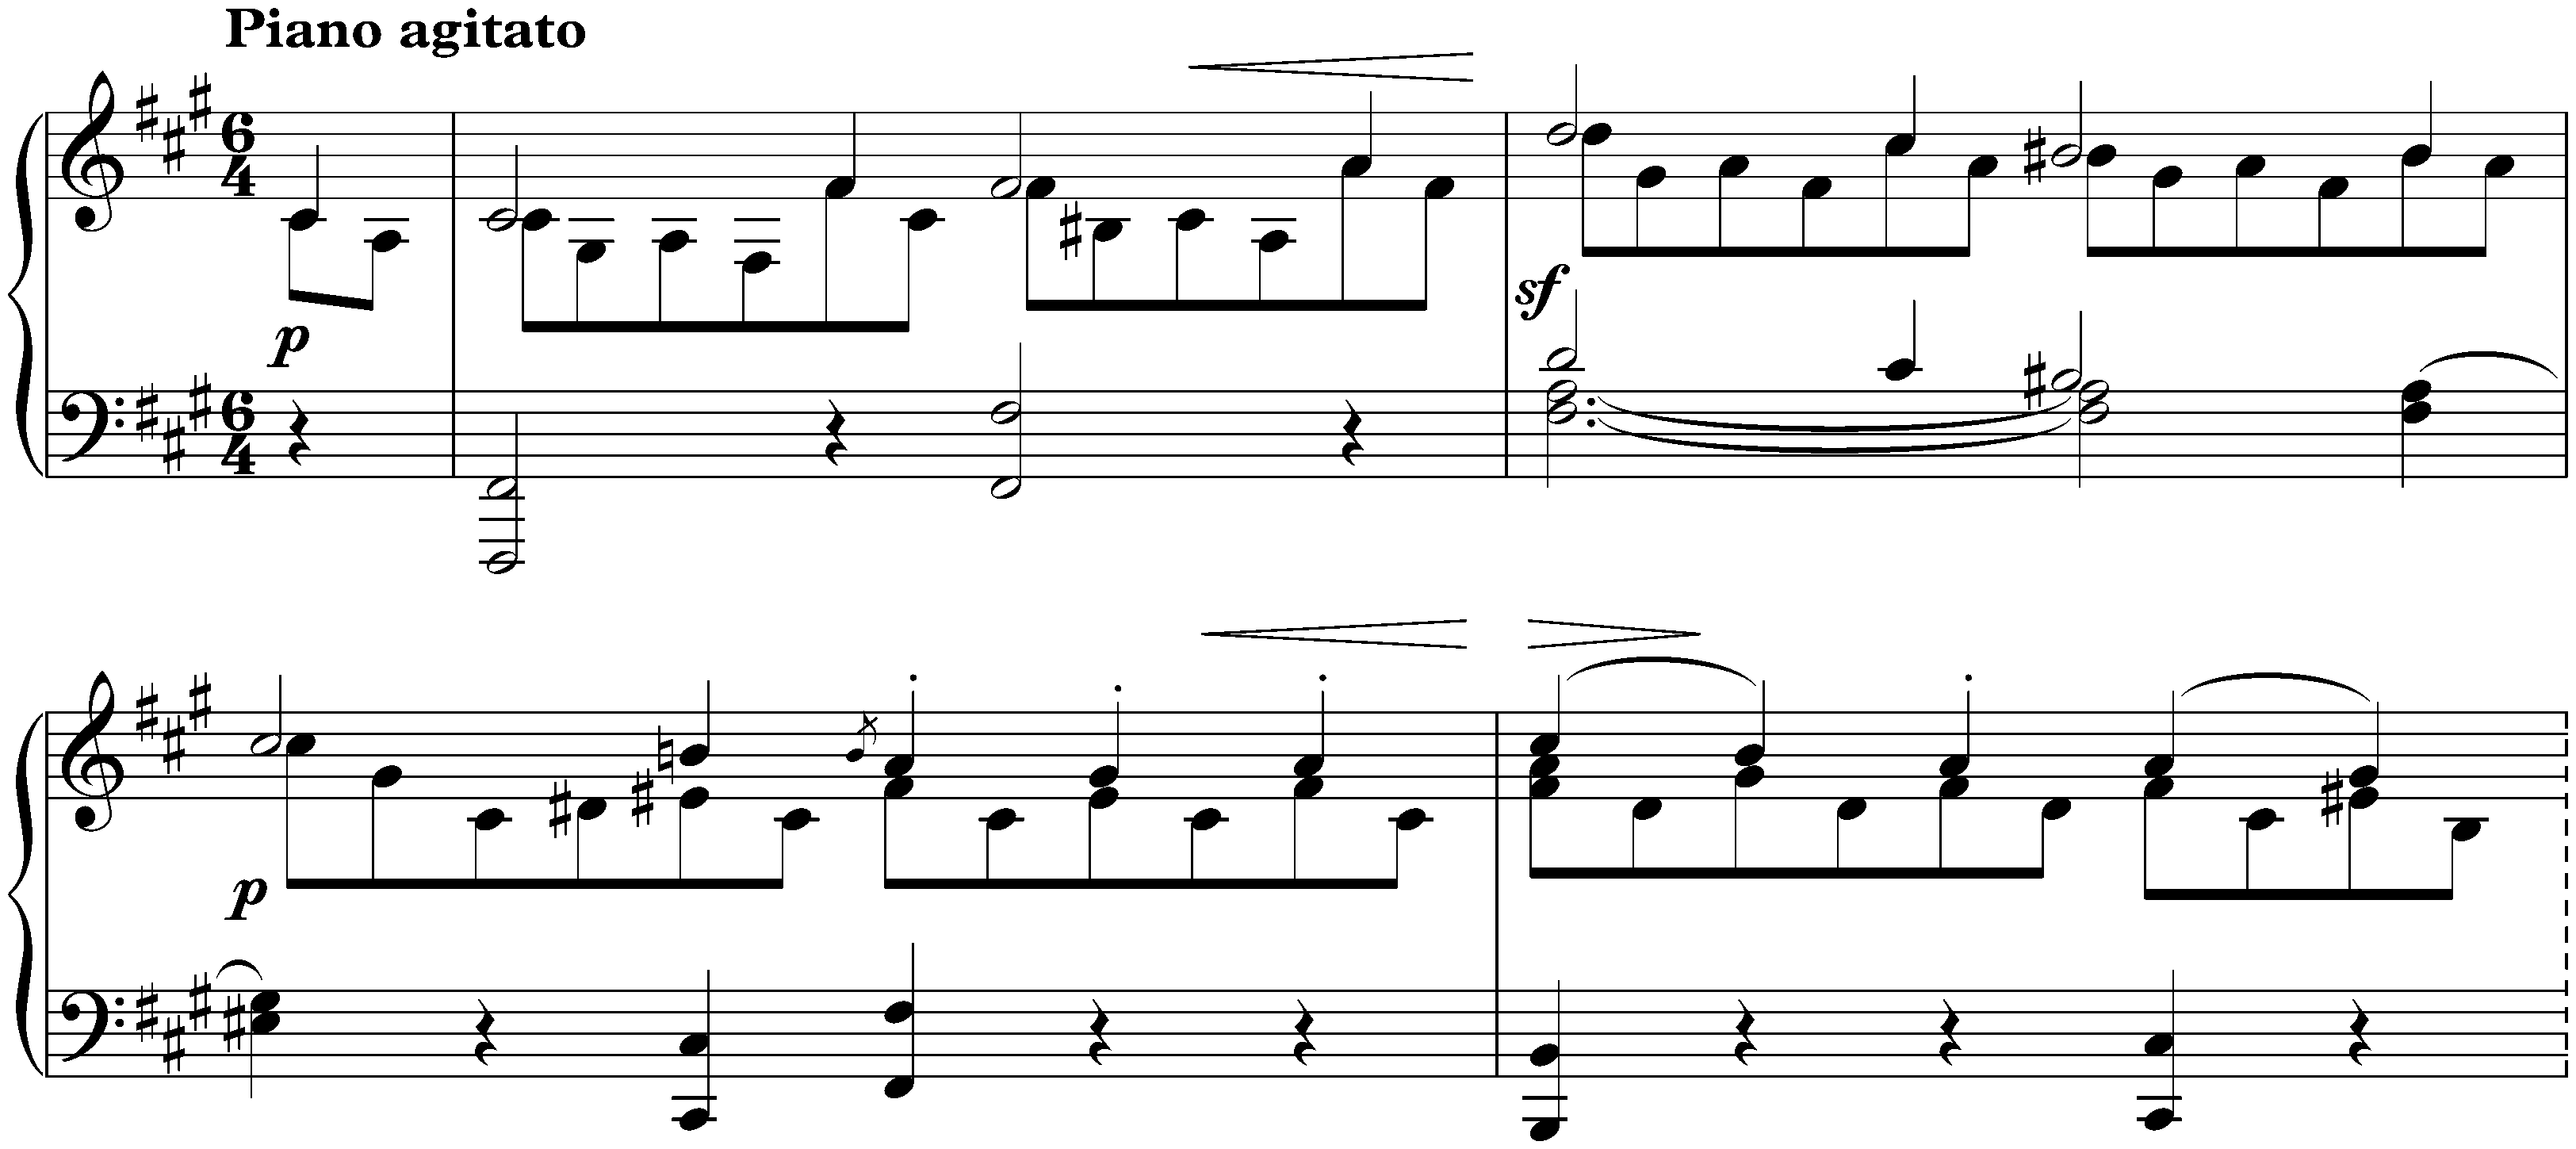 Lieder ohne Worte, Book 1, op. 19b; 5. F-sharp minor